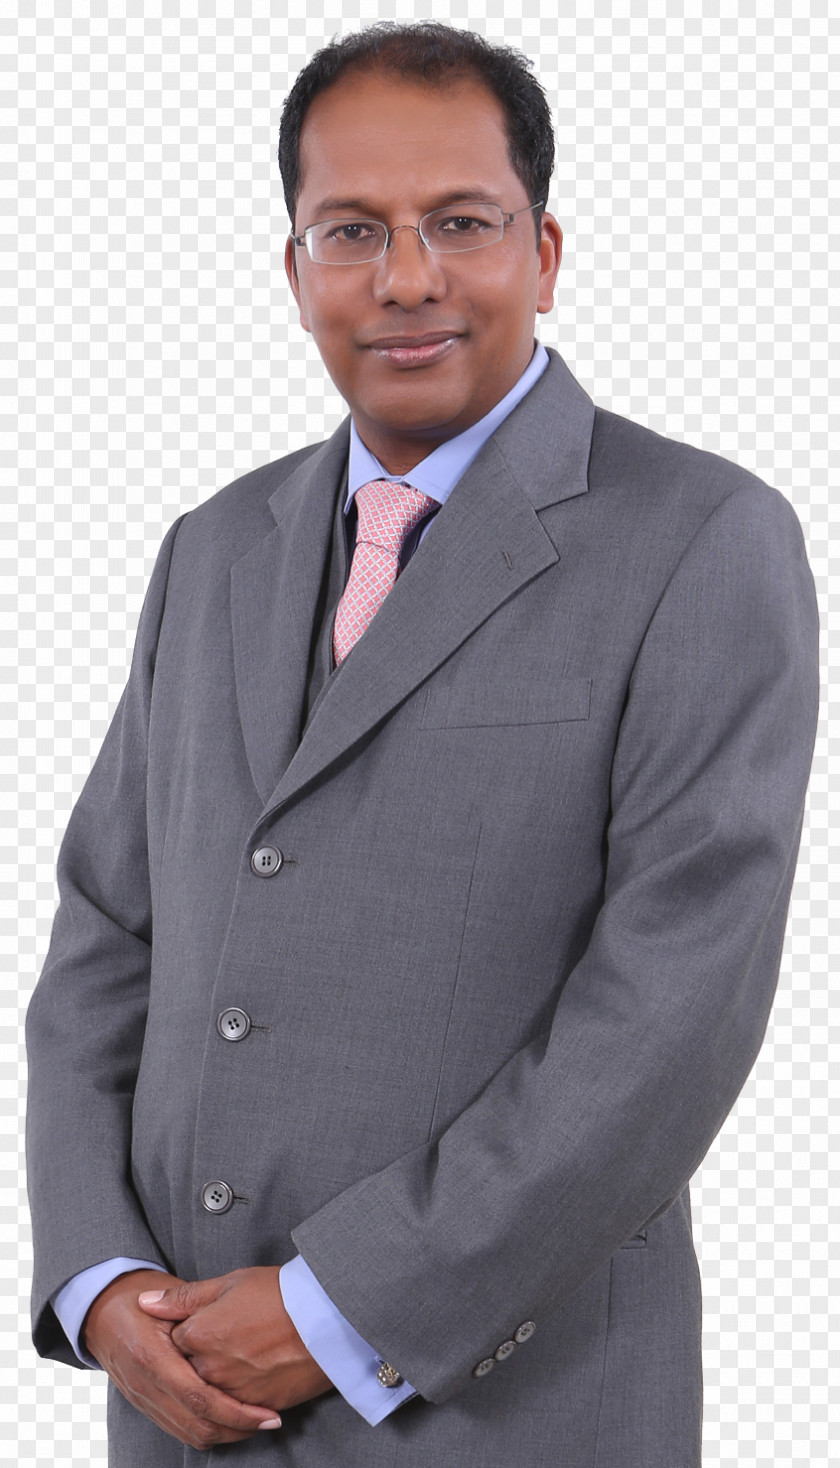 Business Financial Adviser Tuxedo M. Motivational Speaker Job PNG